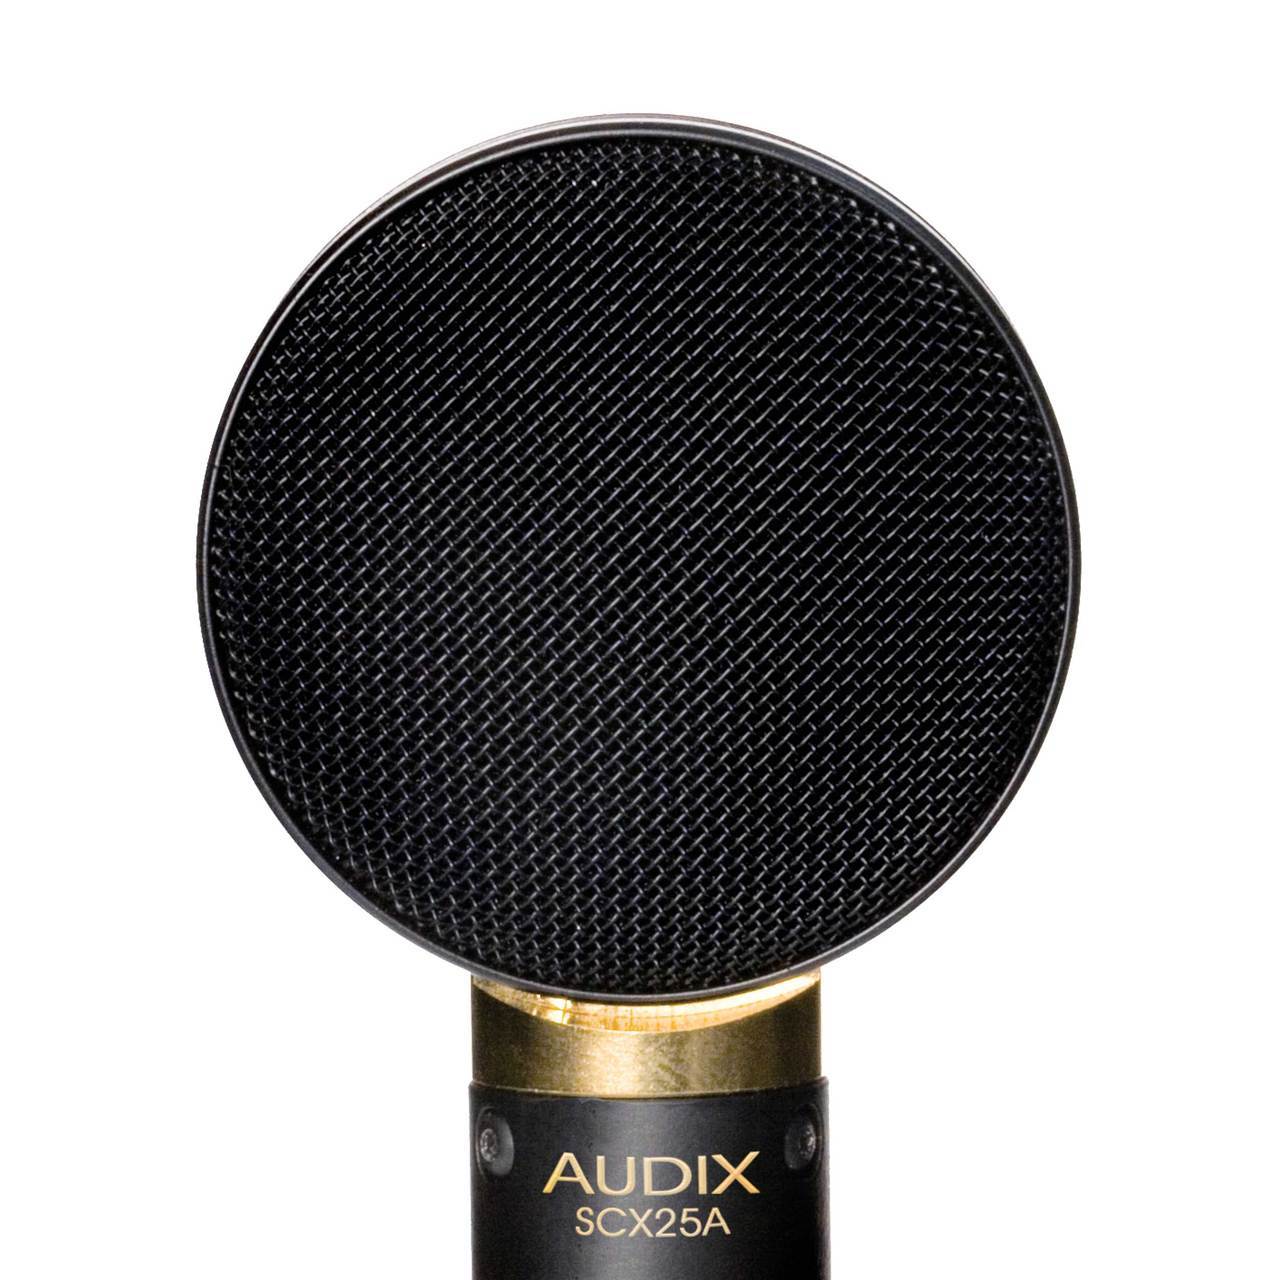 Audix SCX25A AudioDAWg